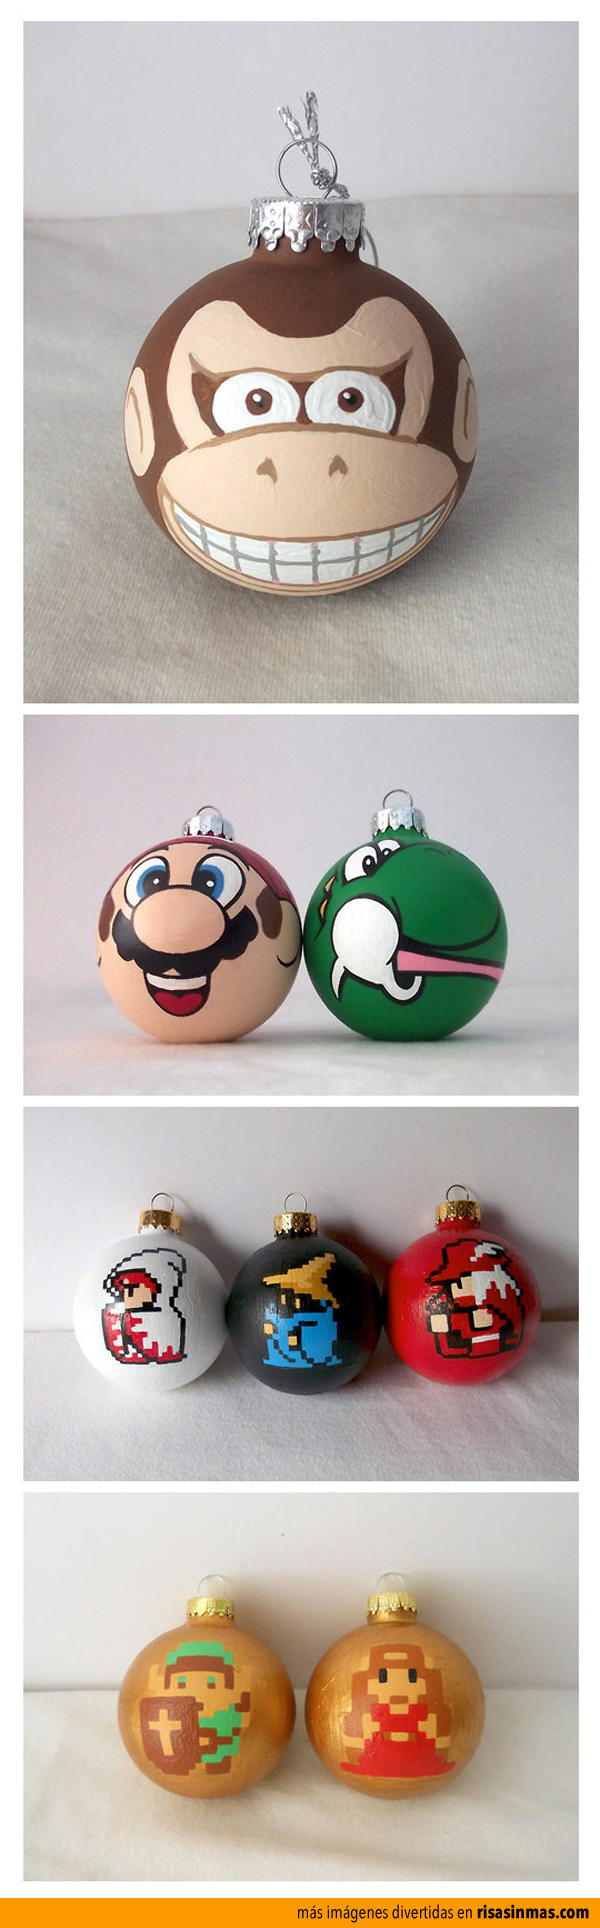 Prepara la navidad con Nintendo